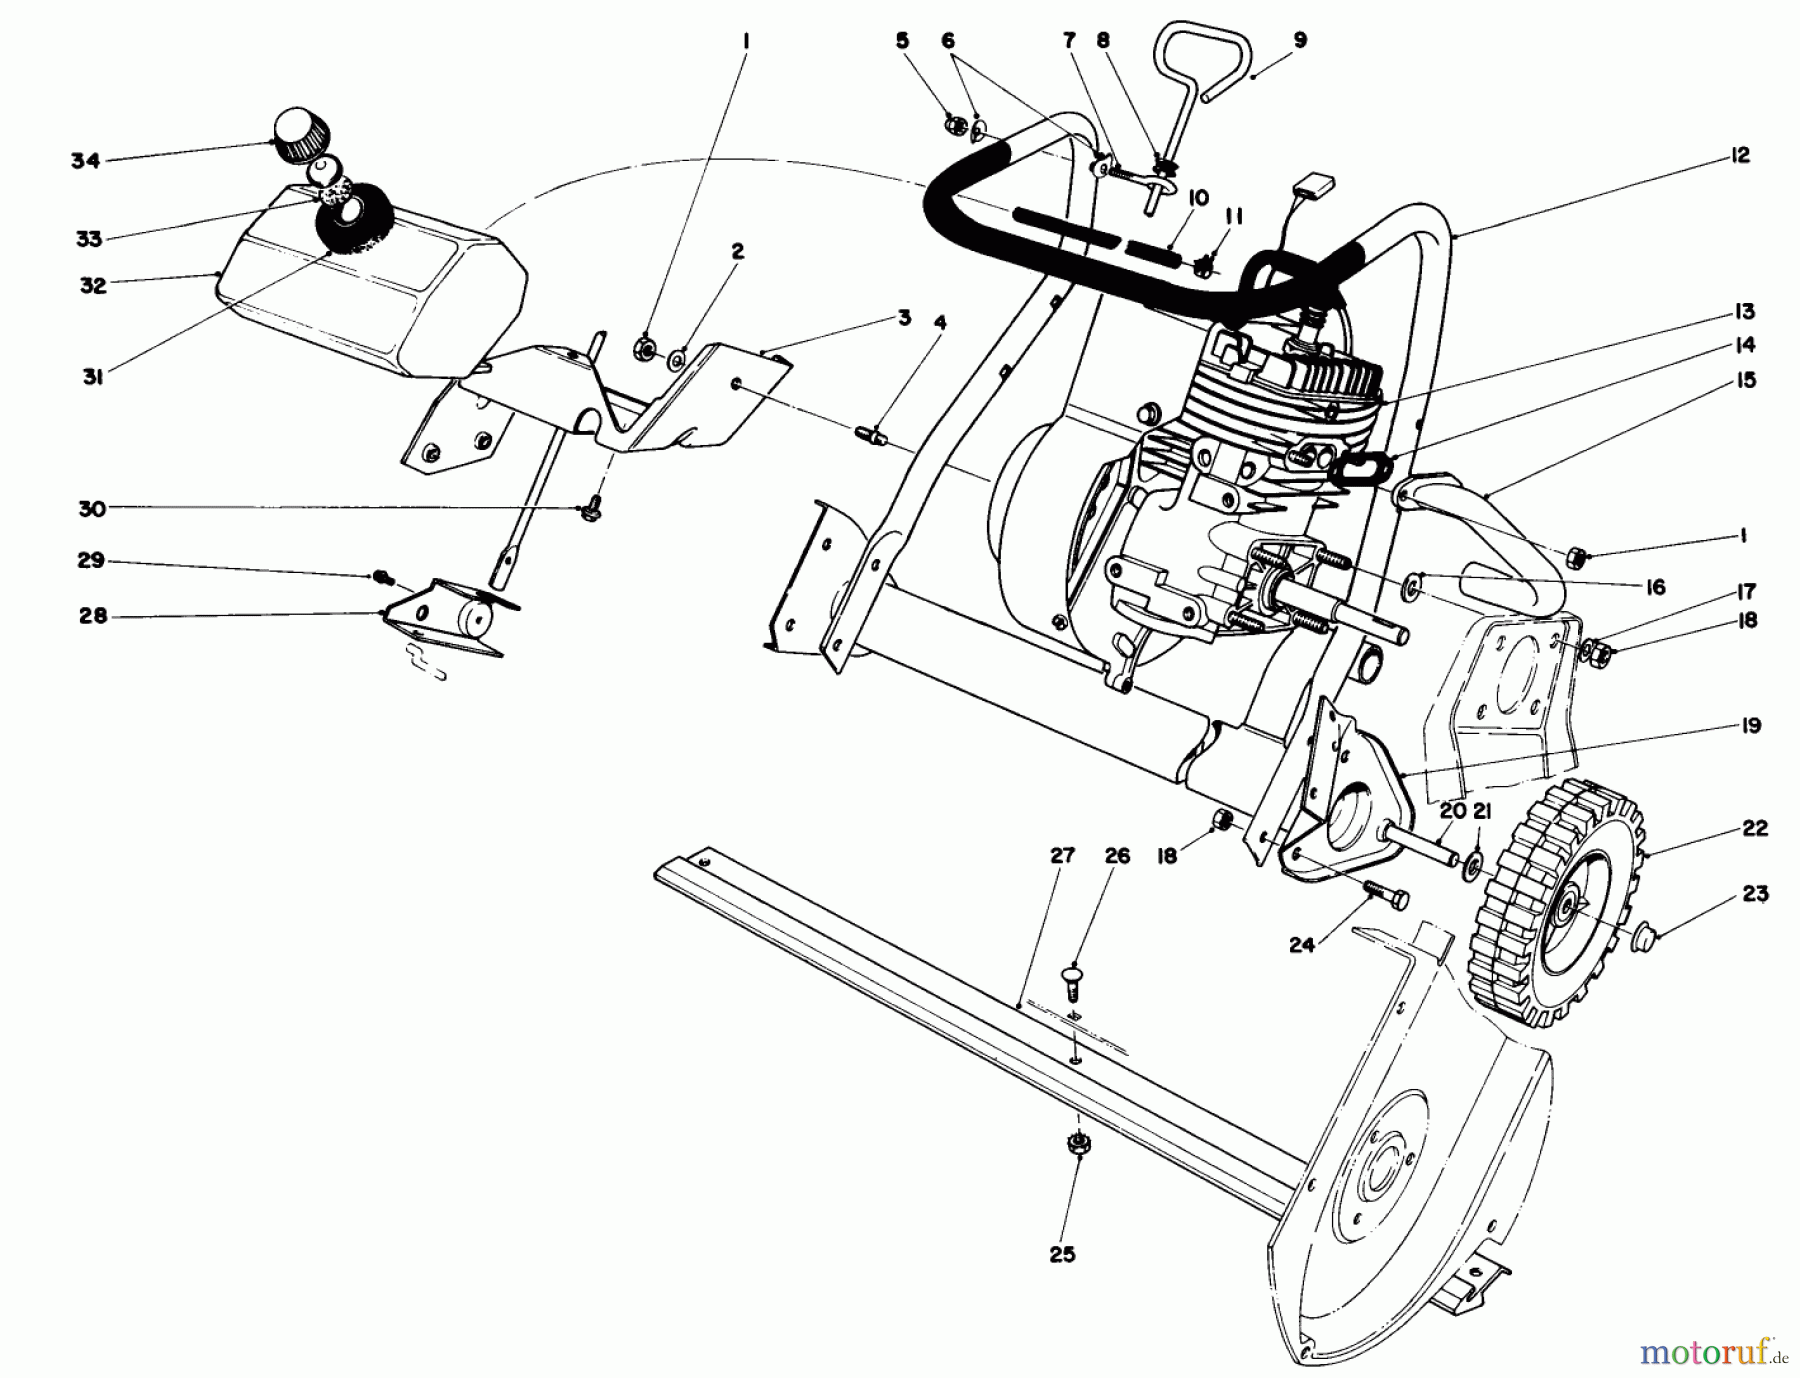  Toro Neu Snow Blowers/Snow Throwers Seite 1 38120 (S-200) - Toro S-200 Snowthrower, 1984 (4000001-4999999) ENGINE ASSEMBLY